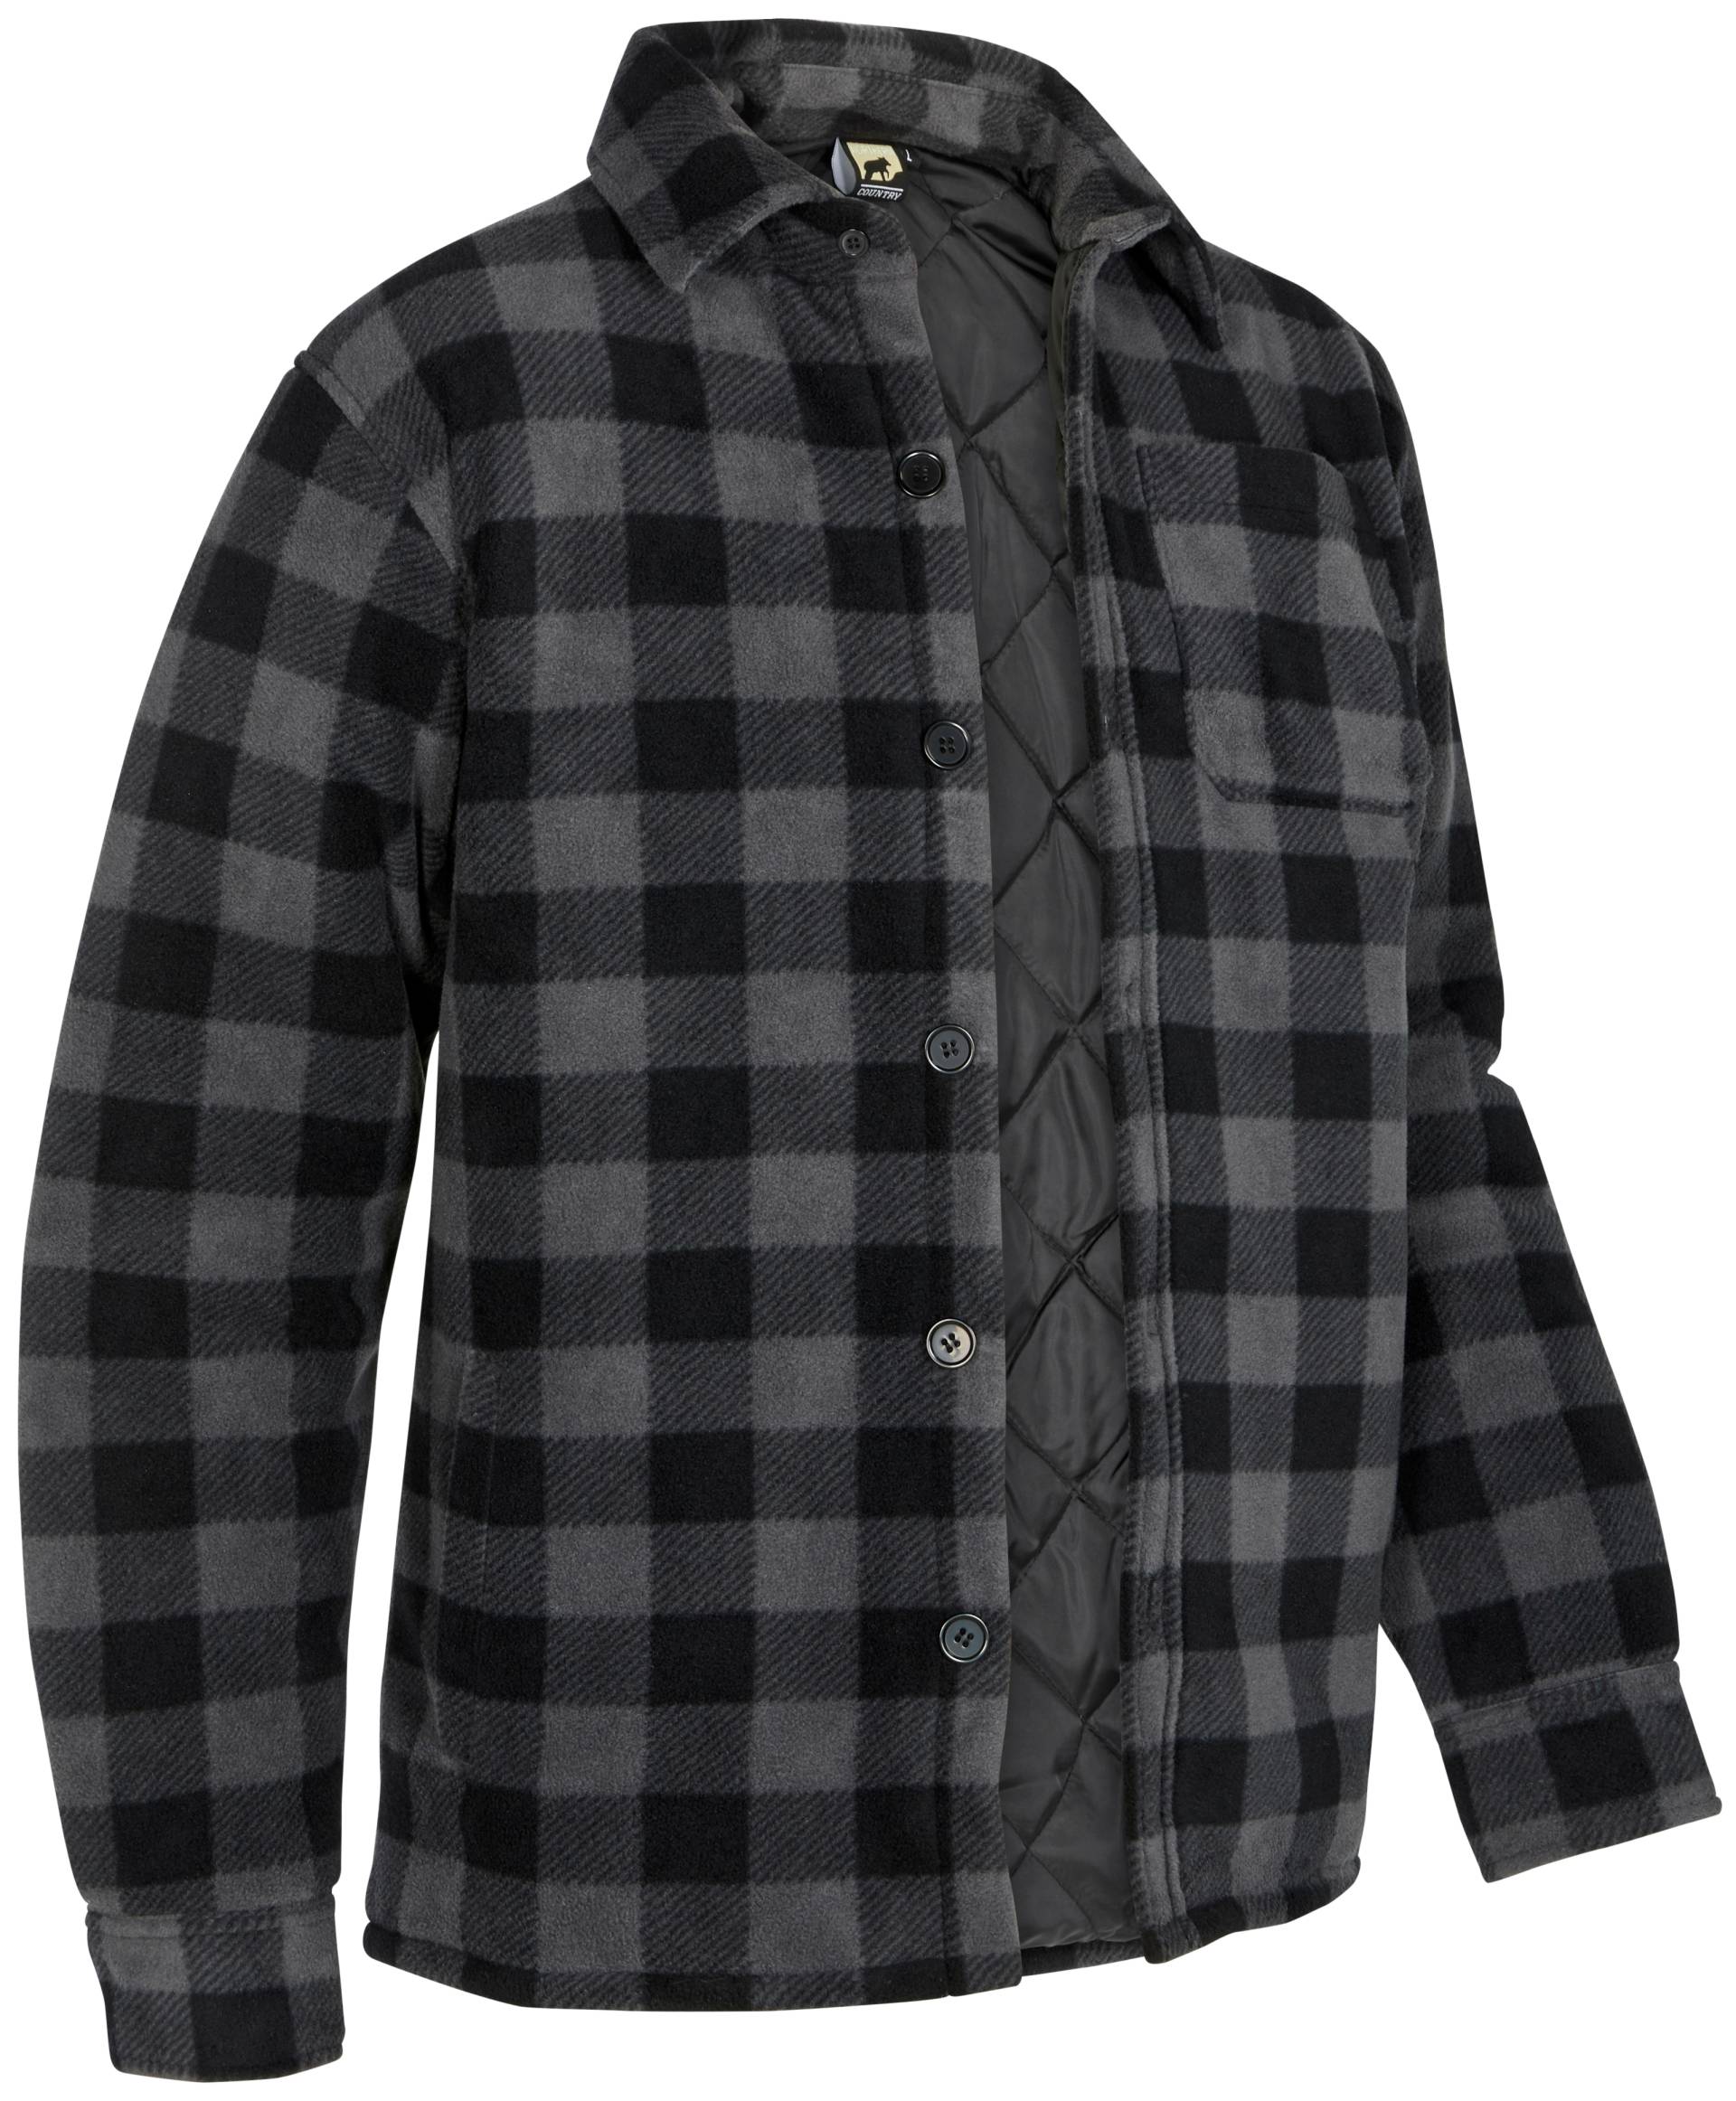 Northern Country Flanellhemd, (als Jacke offen oder Hemd zugeknöpft zu tragen), warm gefüttert, mit 5 Taschen, mit verlängertem Rücken, Flanellstoff von Northern Country